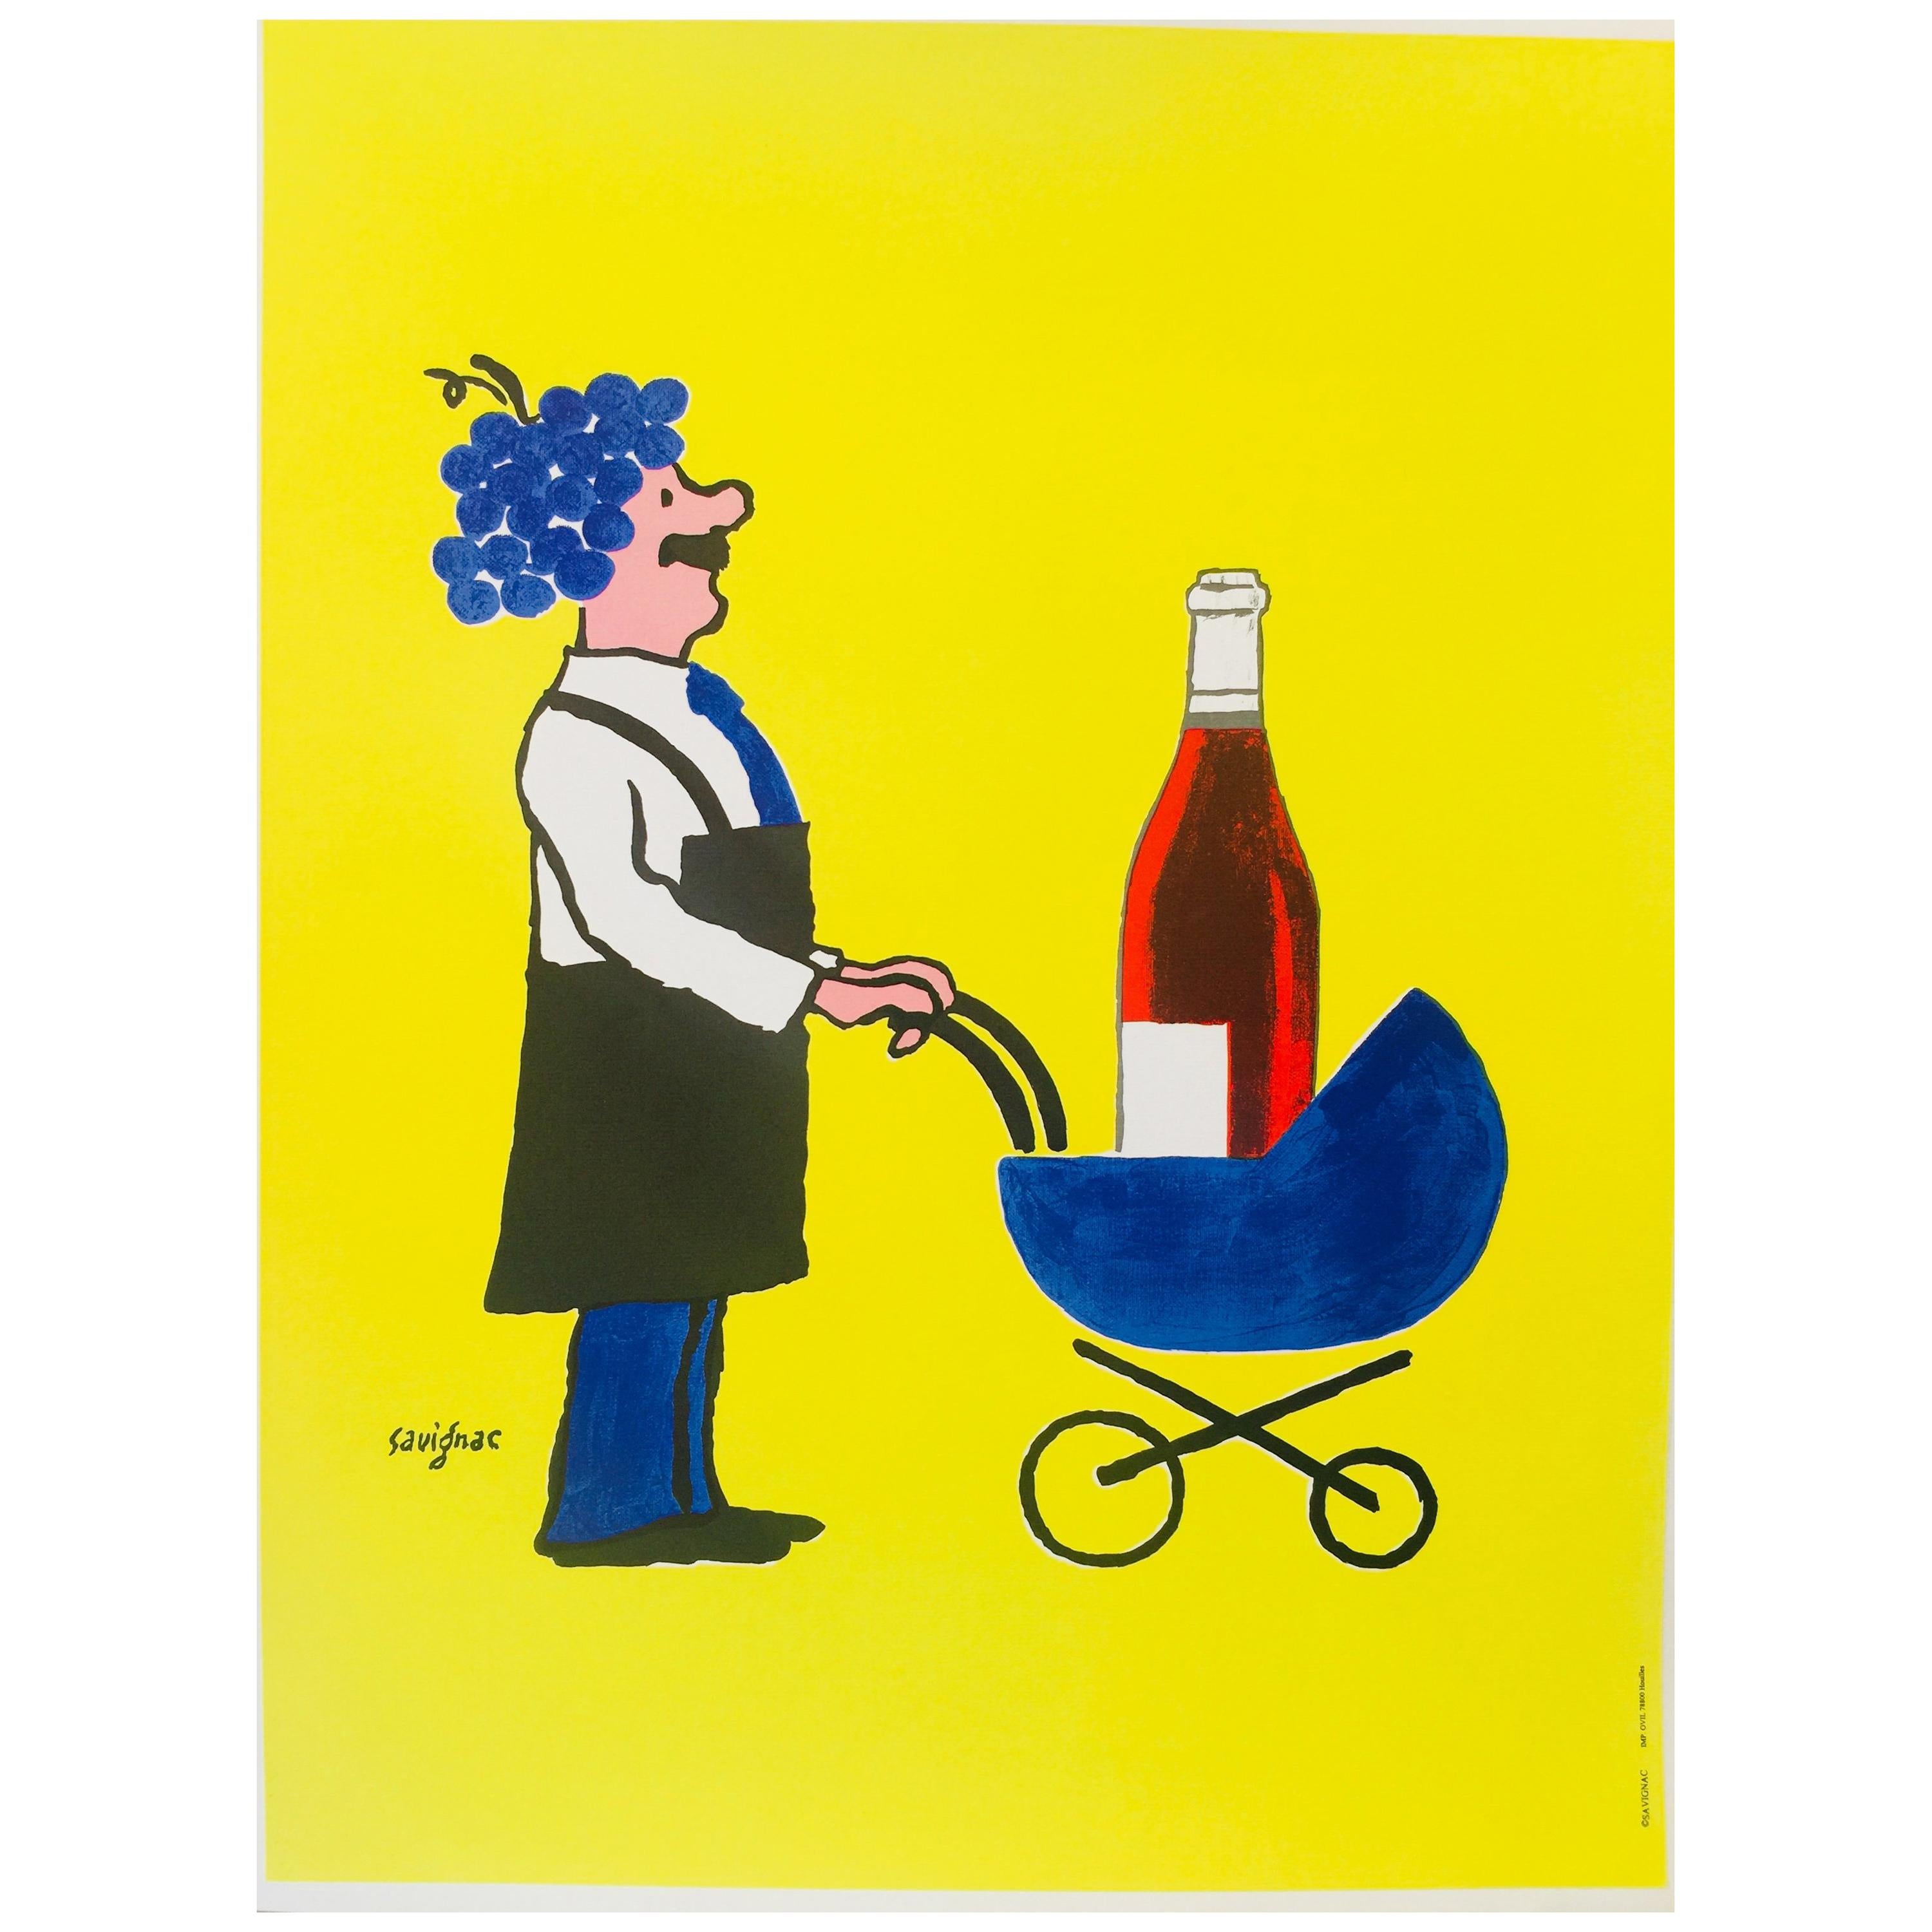 Original Vintage French Wine Poster by Savignac 'Buvons Ici Le Vin Nouveau'